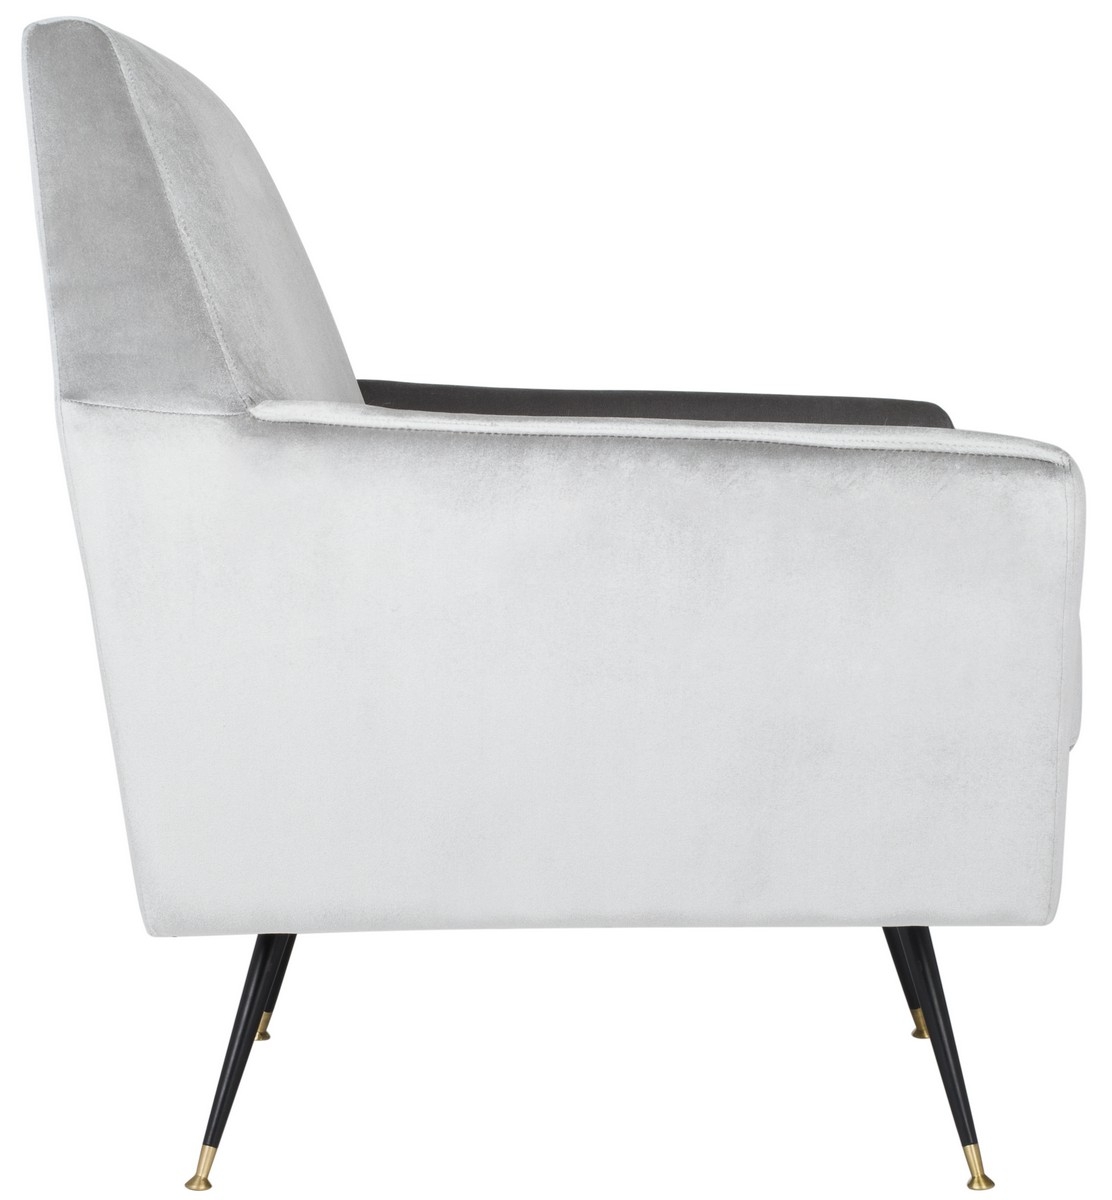 Nynette Velvet Retro Mid Century Accent Chair -  Light Grey - Safavieh - Image 2